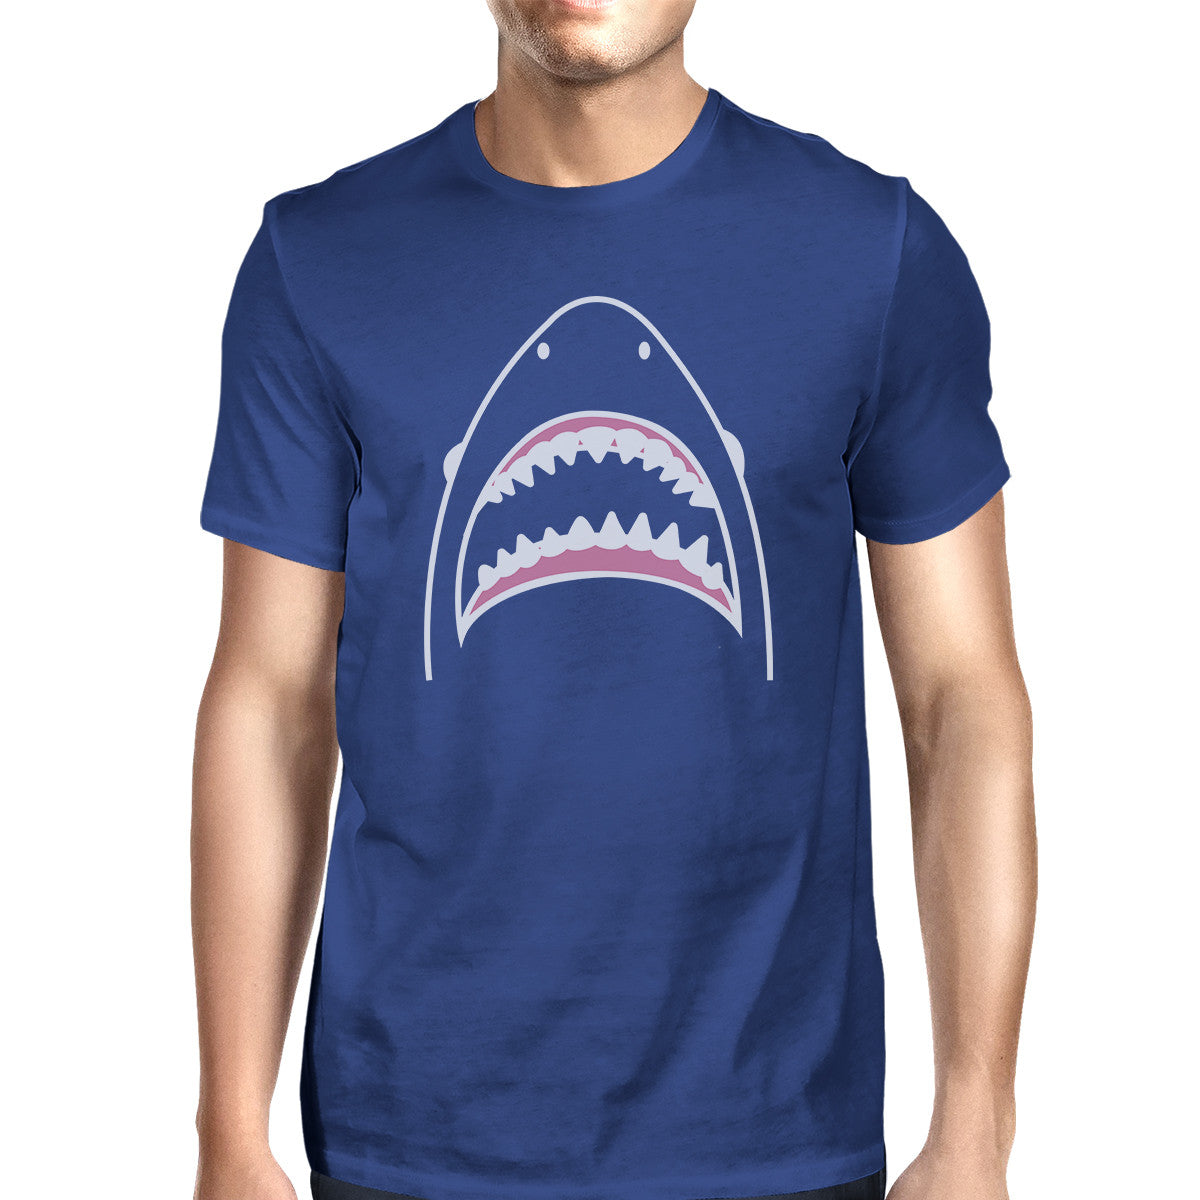 Shark Mens Royal Blue Cotton Short Sleeve Tee Cool Summer T-Shir